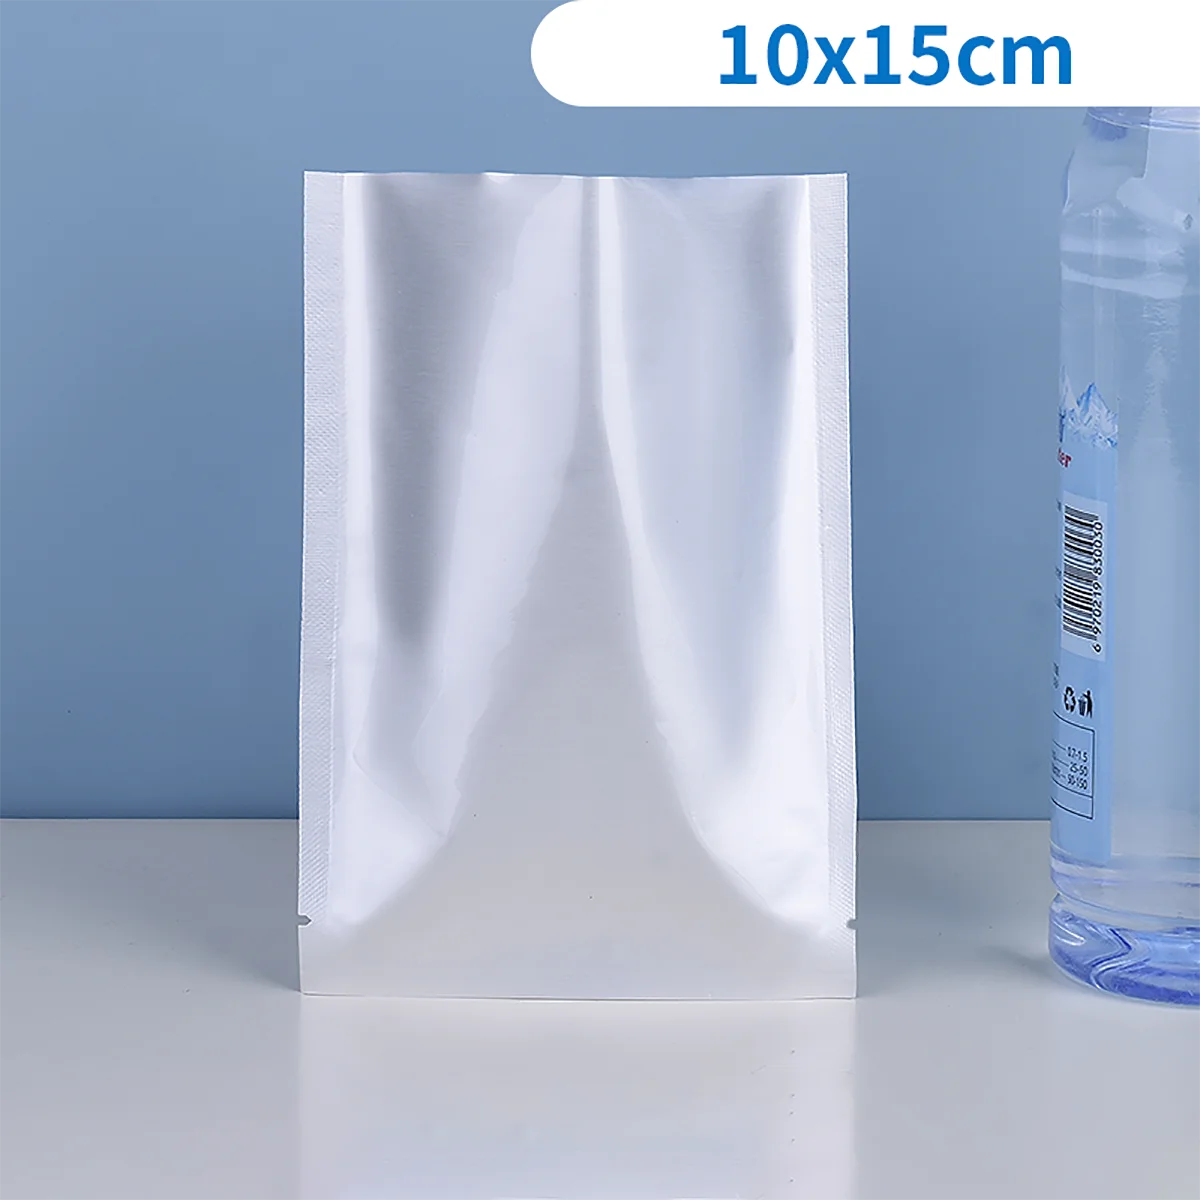 100шт 10x15 см Вакуумный упаковочный пакет из чистой алюминиевой фольги, вакуумные пакеты для хранения продуктов с горячим уплотнением, Вакуумный упаковочный пакет для деликатесов